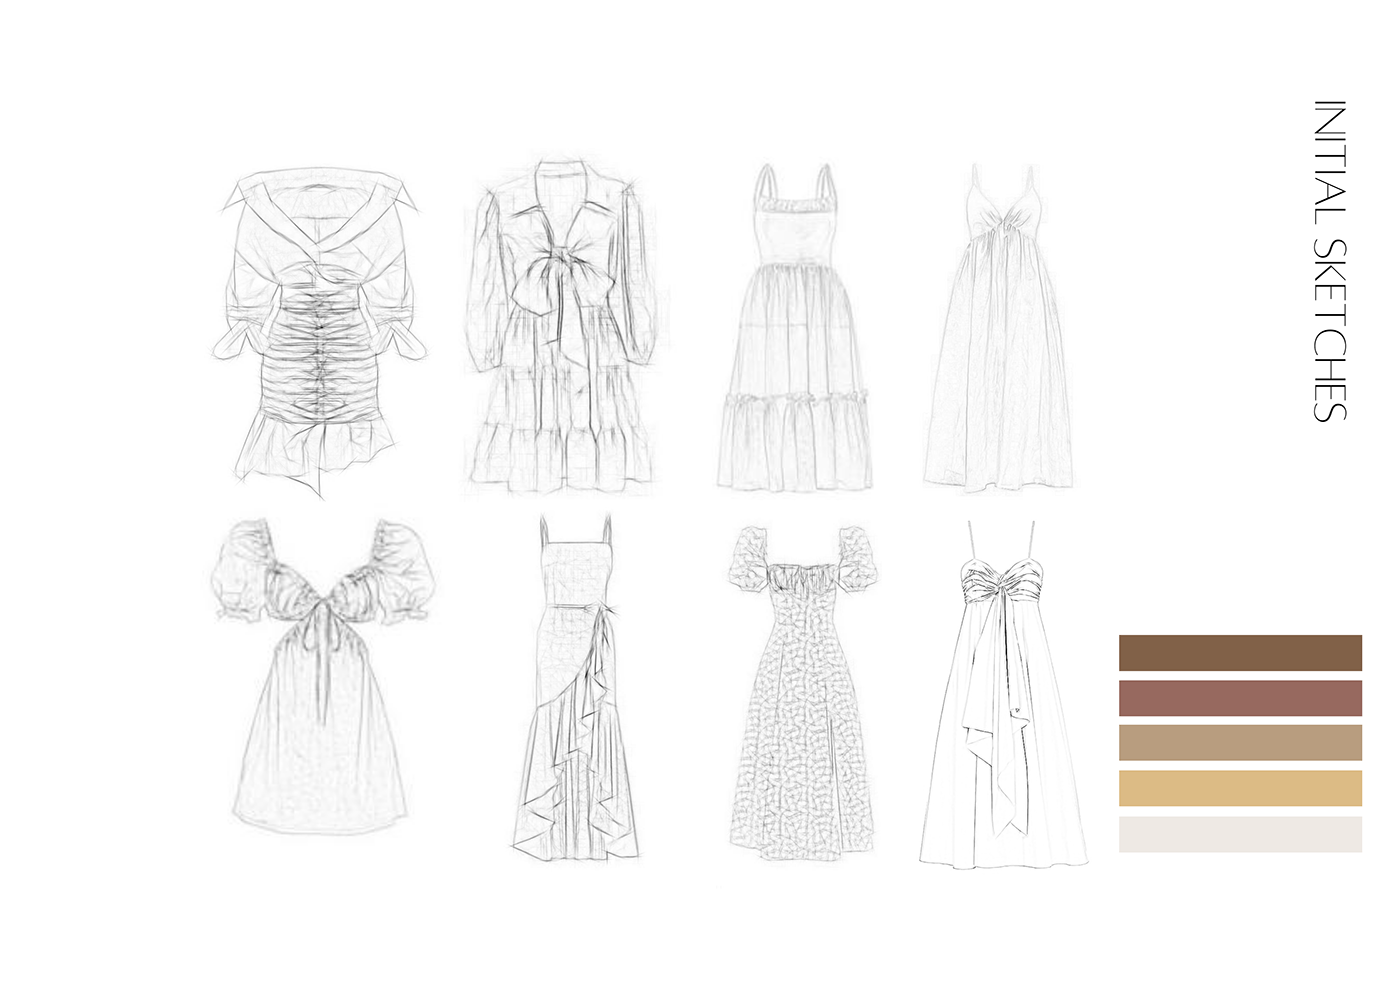 croquis design designer Digital Art  digital illustration Fashion  fashion design fashion editorial fashion illustration sketch